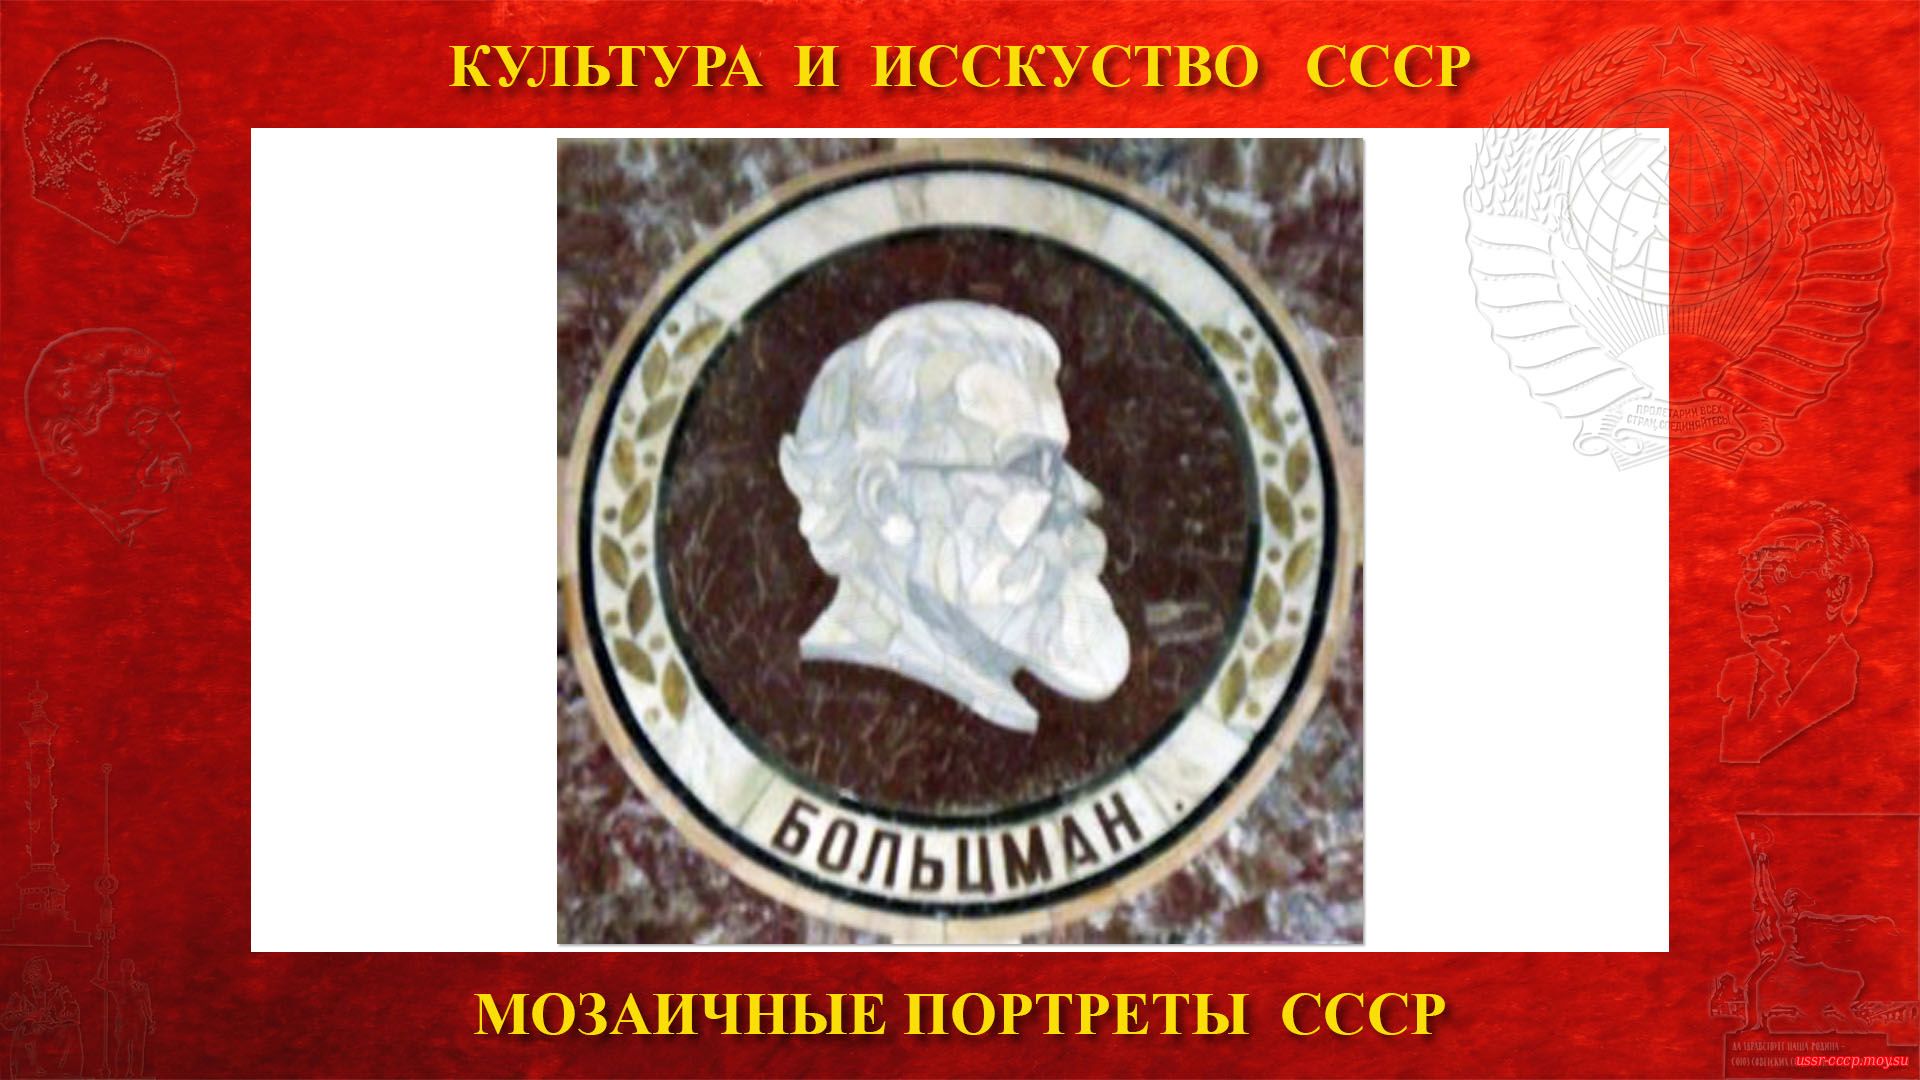 Мозаичный портрет Больцману Л. на Ленинских горах в ГЗ МГУ (Москва 1953)